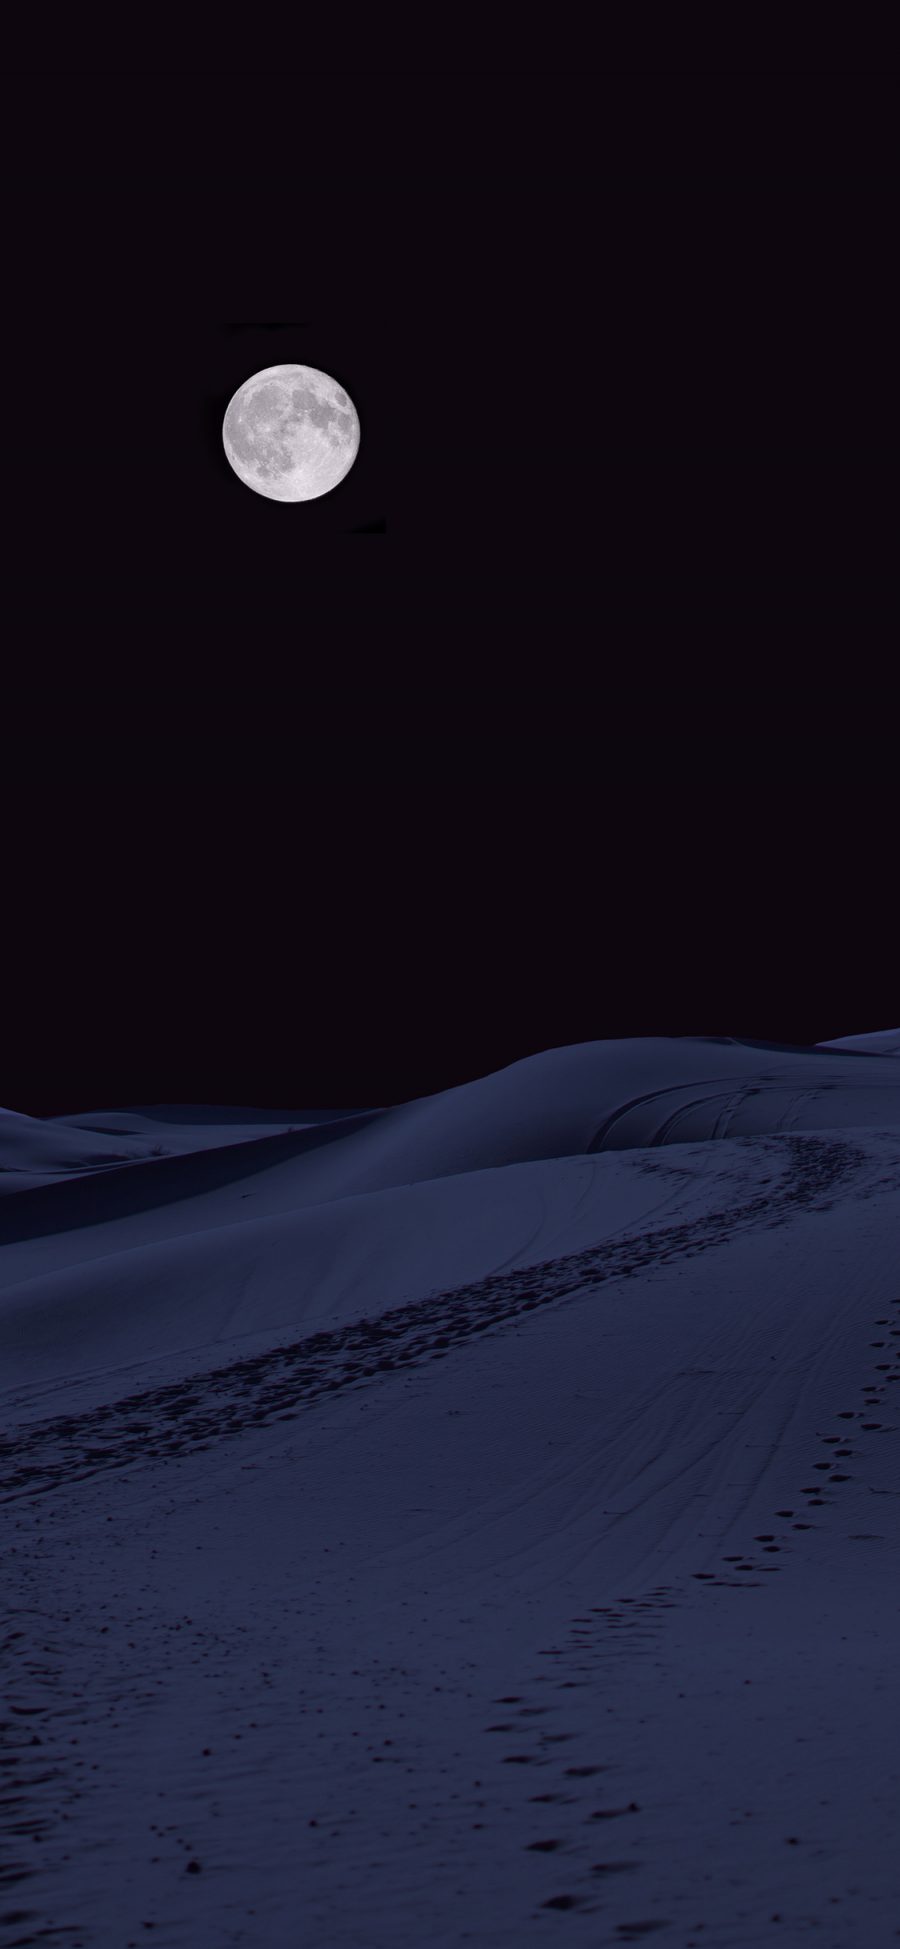 [2436×1125]沙漠 夜晚 月亮 圆月 黑暗 苹果手机壁纸图片